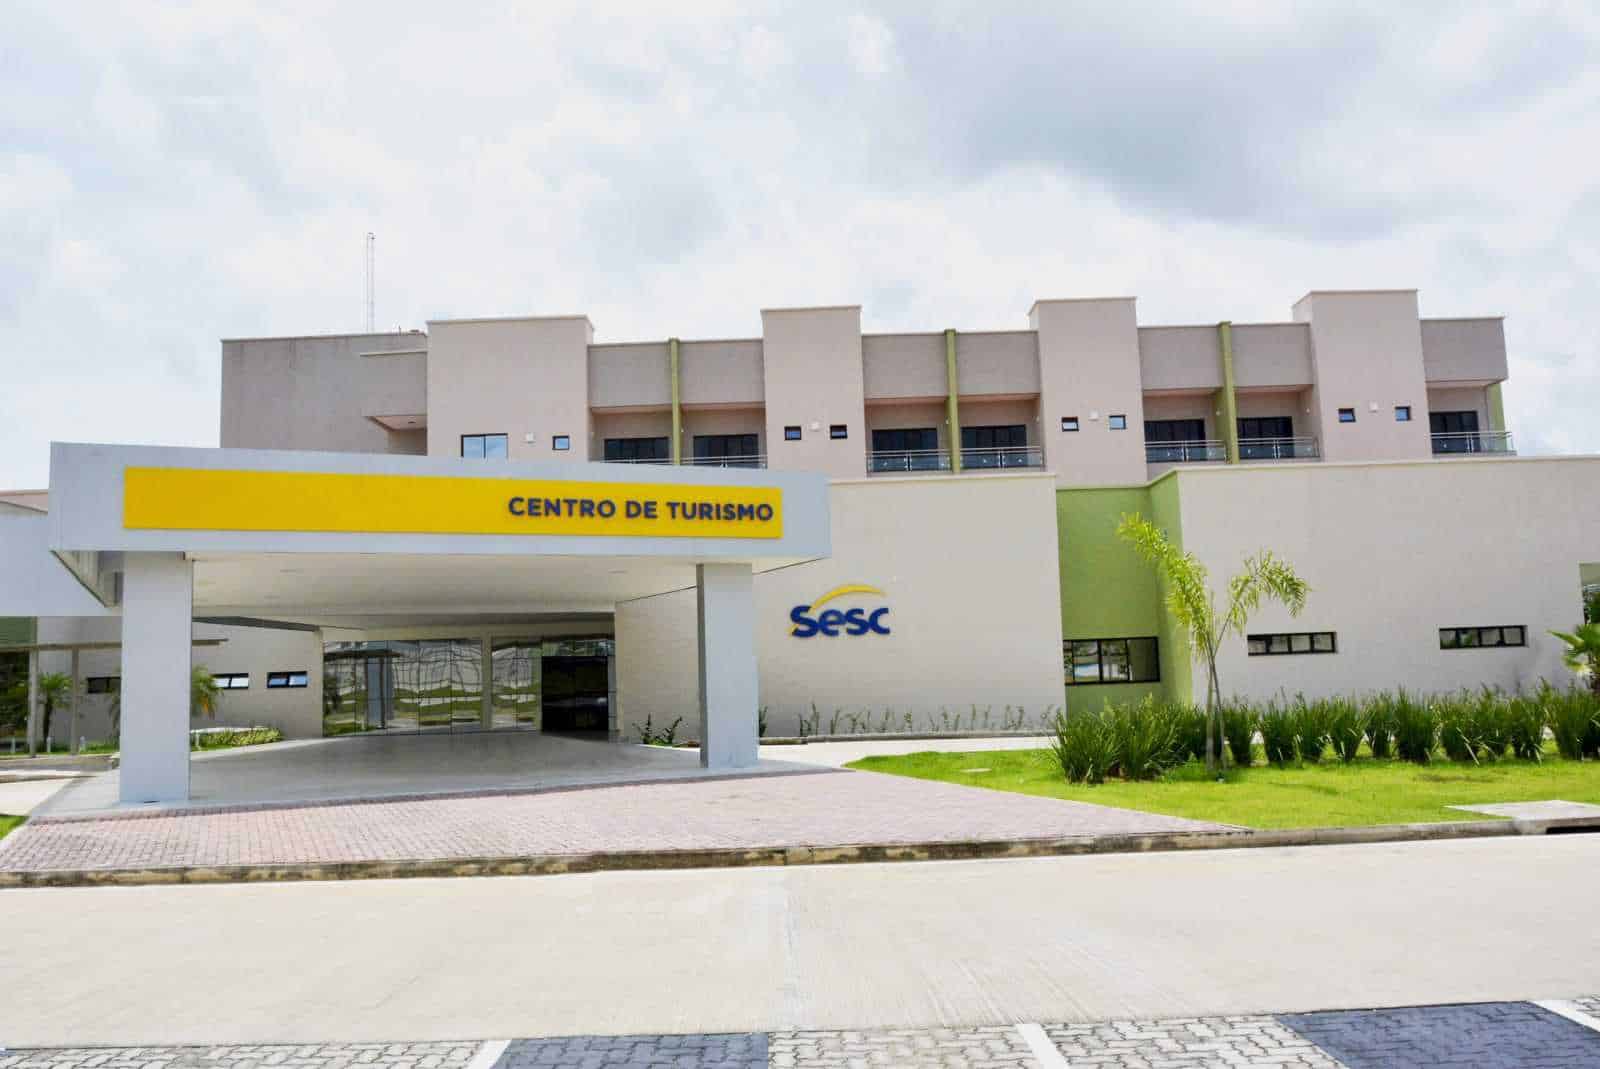 O hotel do Sesc em Cruzeiro do Sul continua recebendo seus hóspedes, seguindo as orientações das autoridades locais